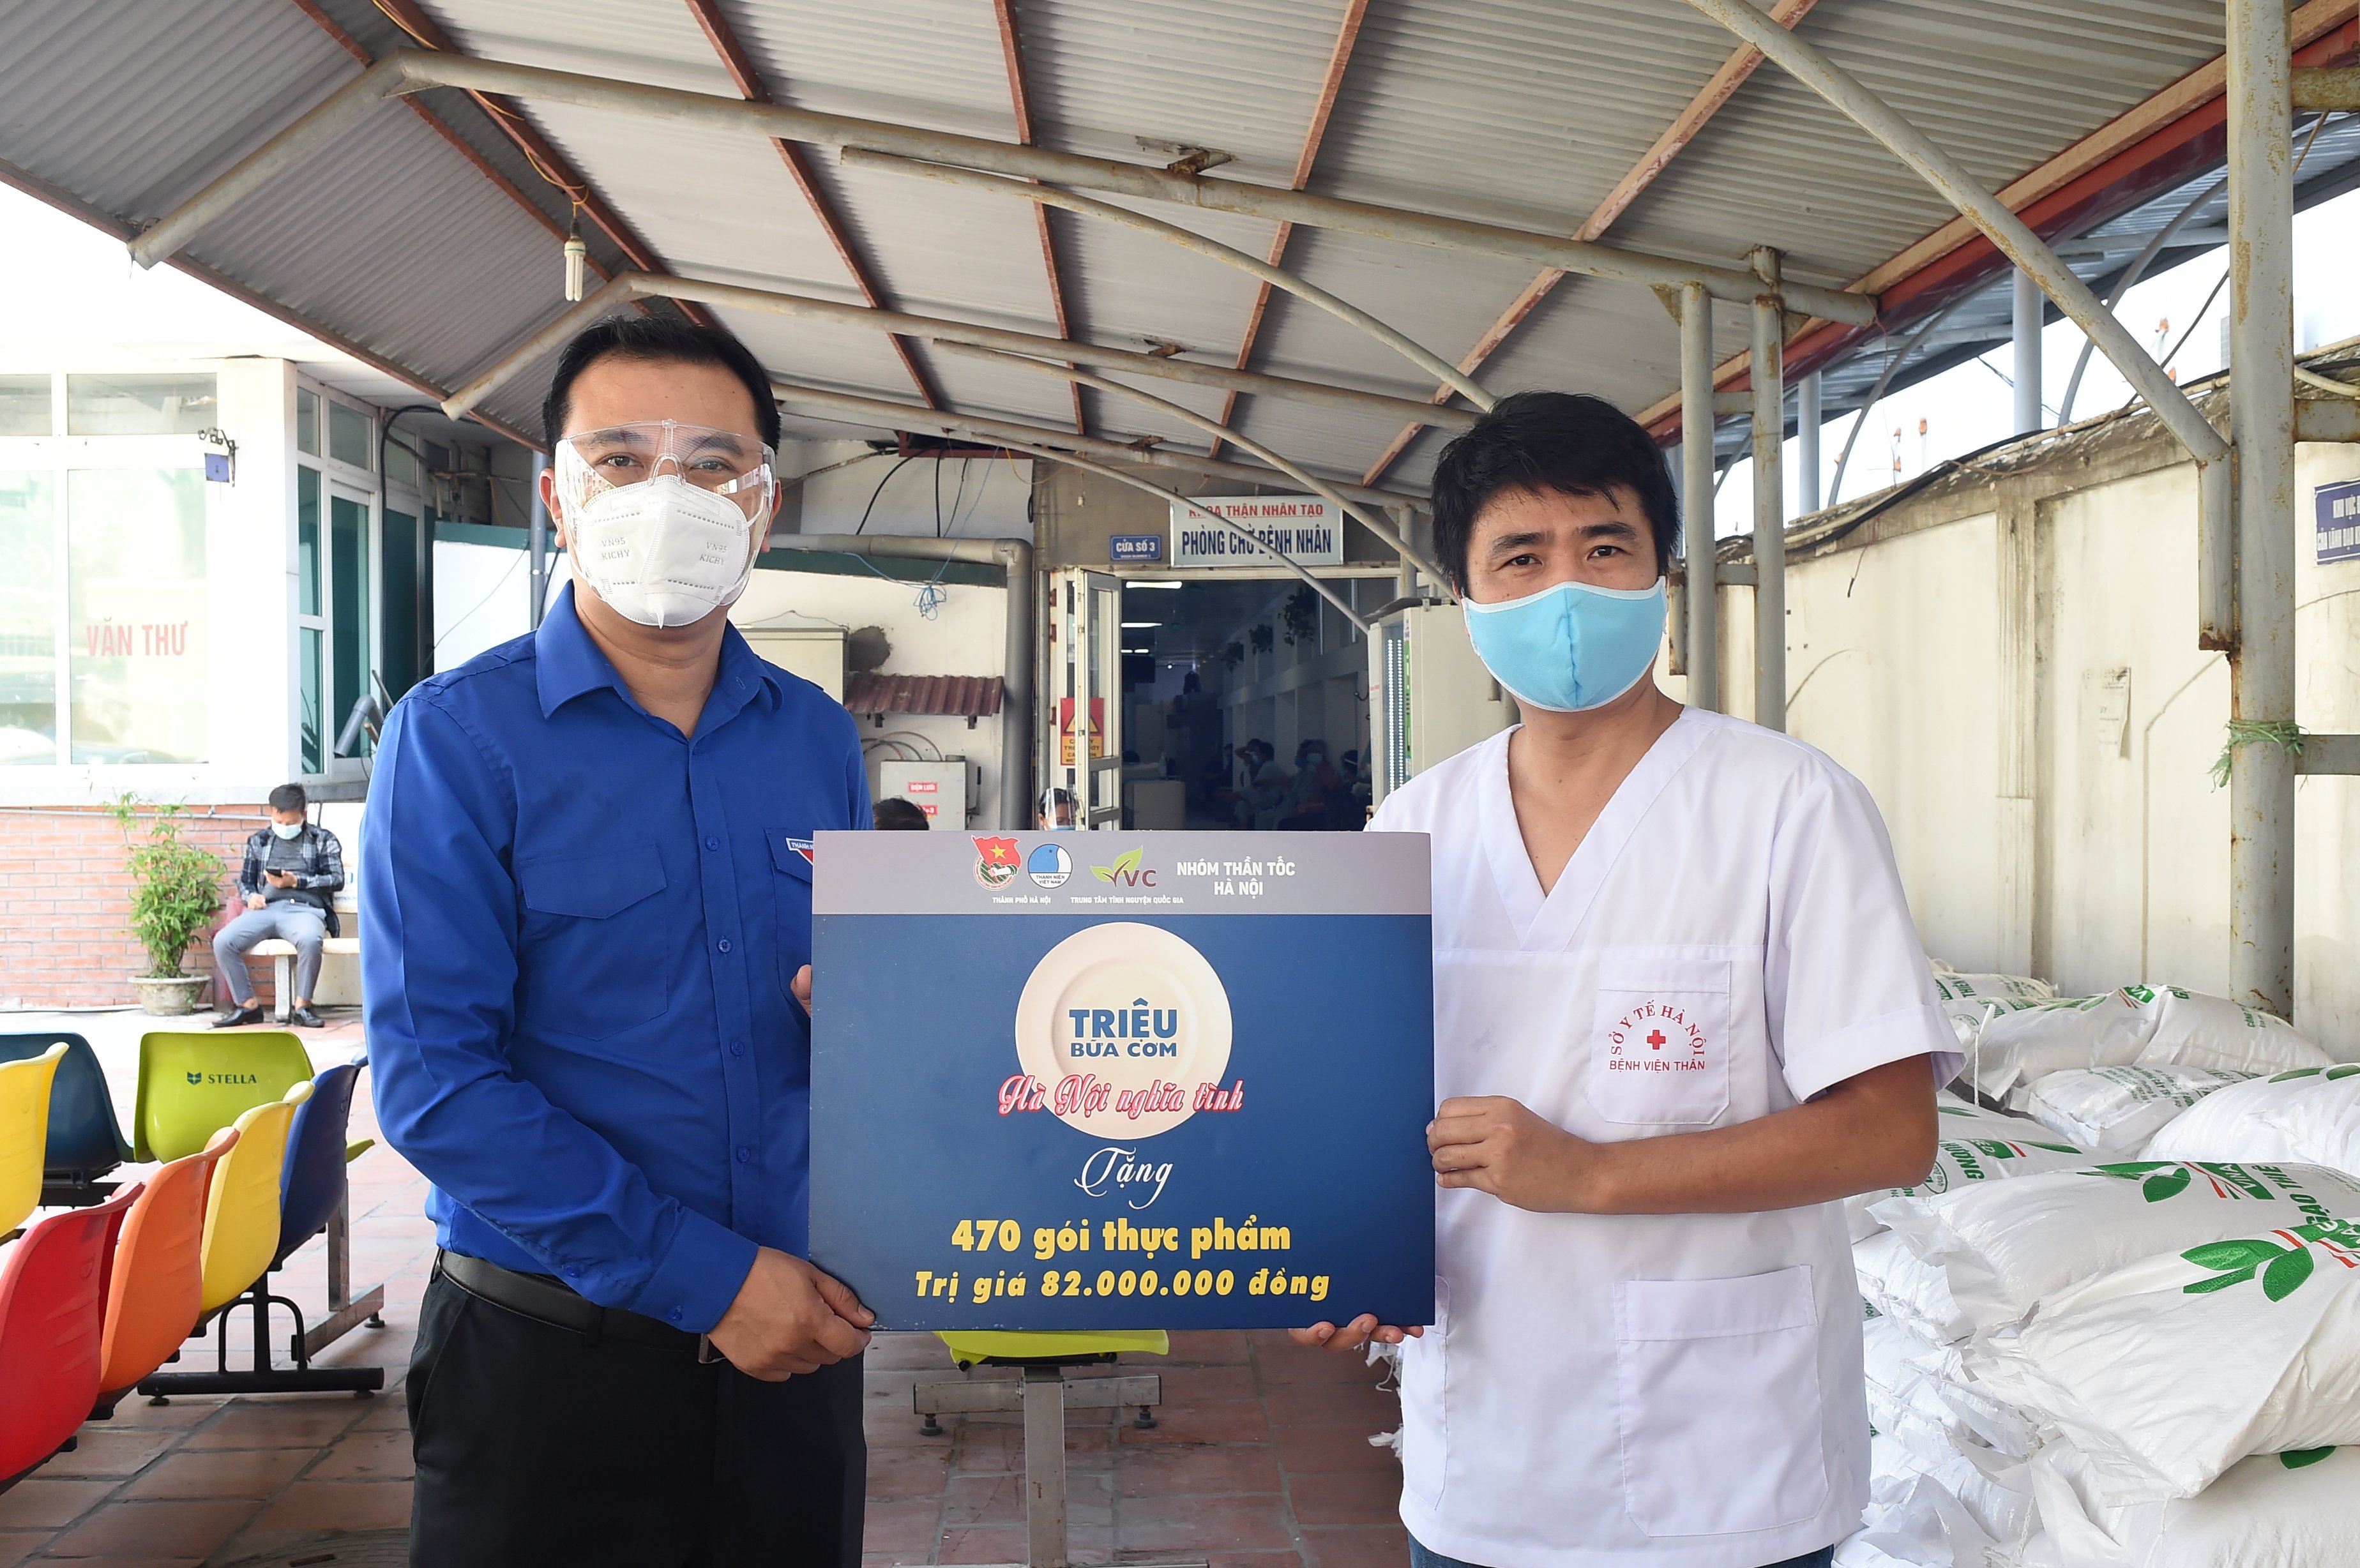 Phó Chủ tịch Thường trực Trung ương Hội LHTN Việt Nam Nguyễn Hải Minh trao biểu trưng 470 đã trao 470 gói thực phẩm tại bệnh viện Thận Hà Nội